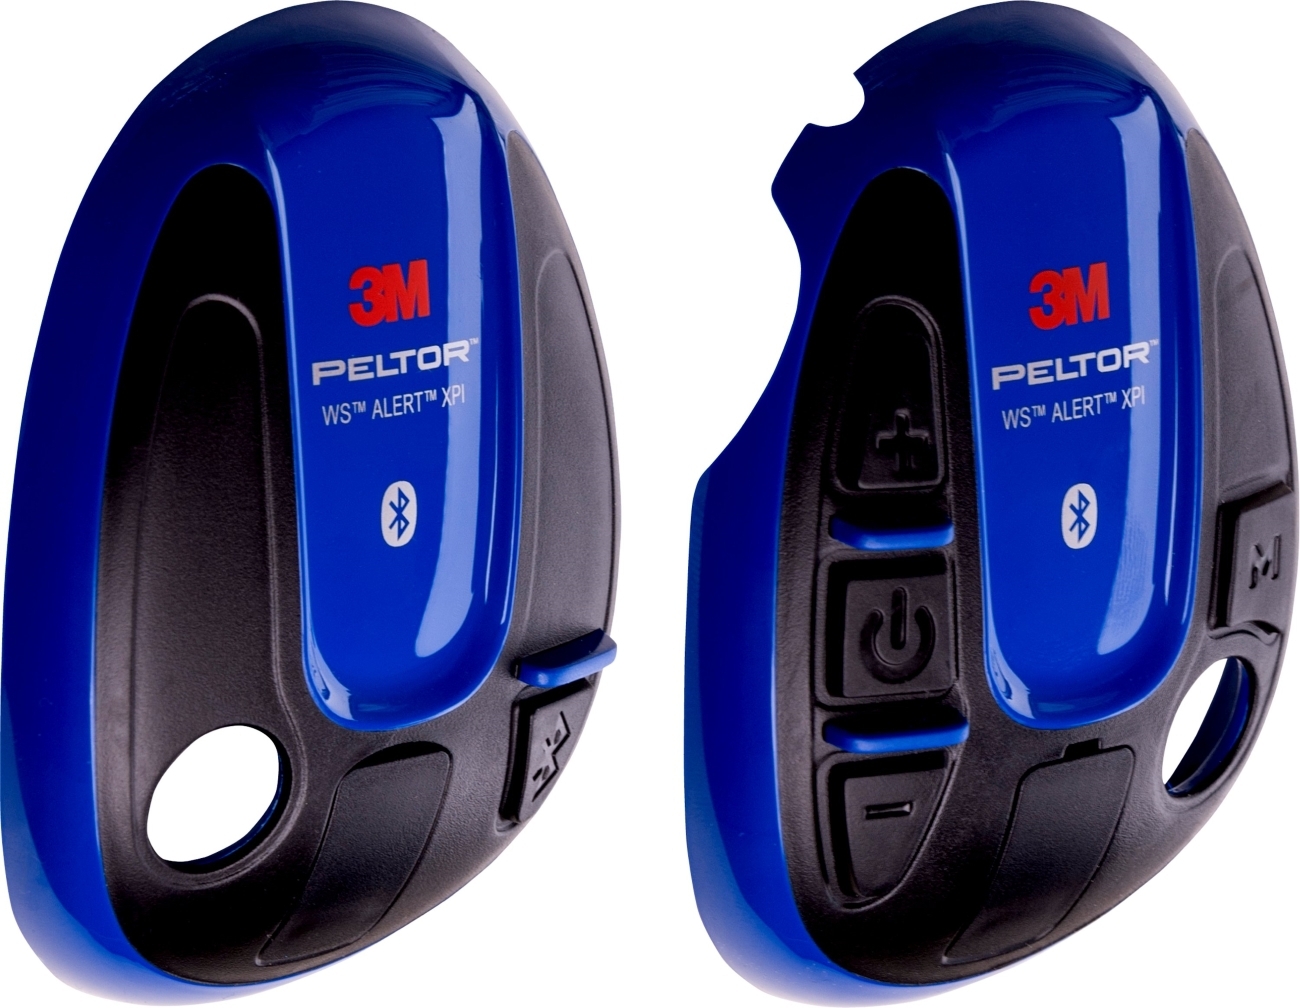 3M PELTOR-suojukset WS ALERT-kuulokkeille, sininen, 1 pari (vasen oikea), 210300-664-BA/1